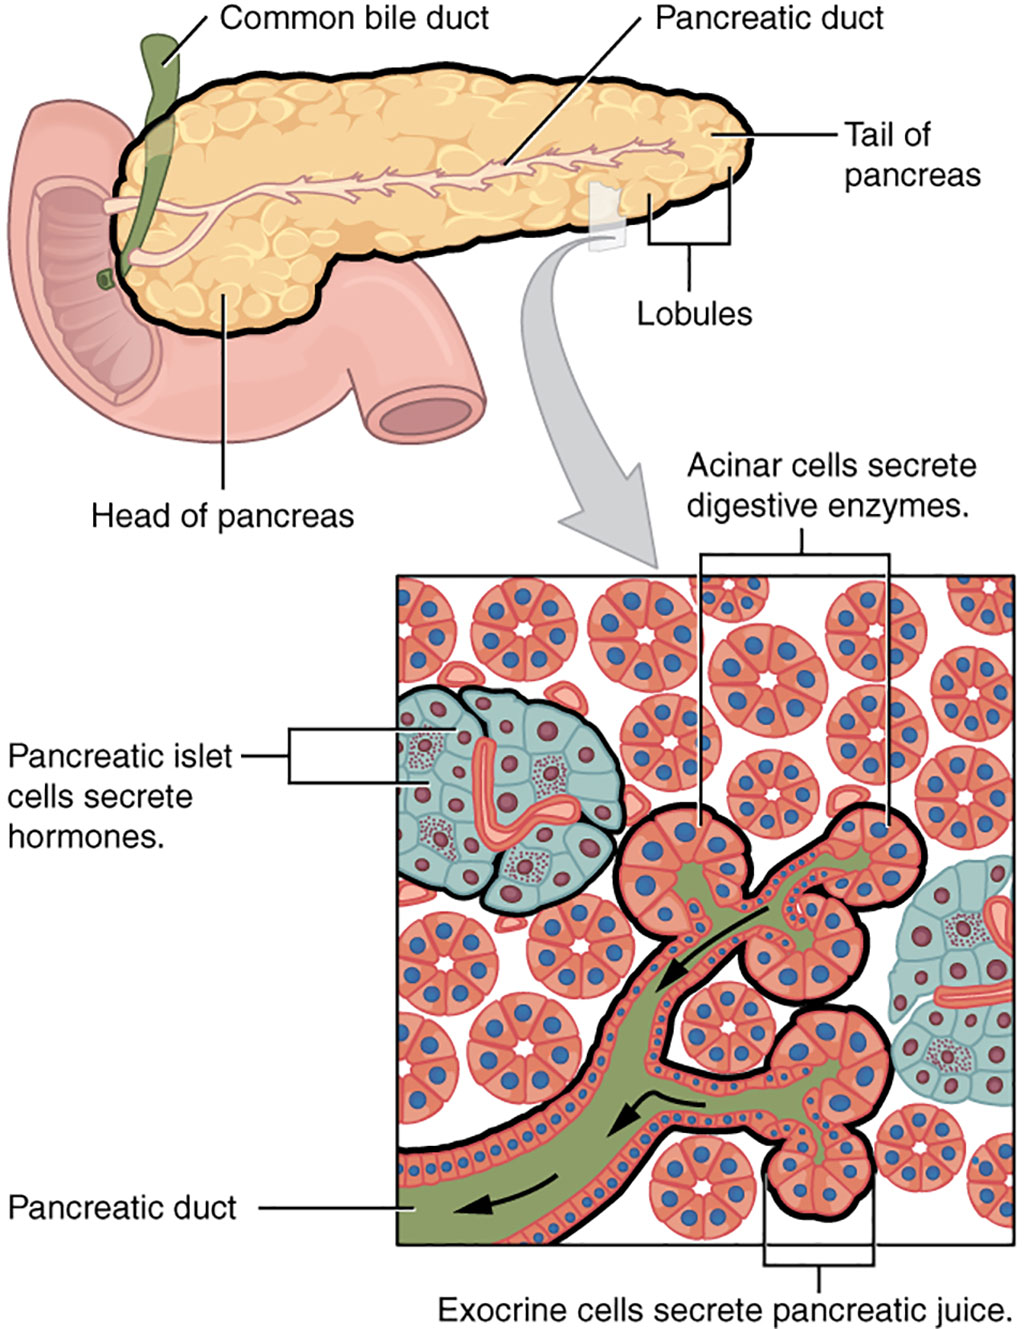 Imagen: El páncreas tiene muchas funciones, servidas por las células endocrinas en los islotes de Langerhans y las células acinares exocrinas. El cáncer de páncreas puede surgir de cualquiera de estas e interrumpir cualquiera de sus funciones (Fotografía cortesía de Wikimedia Commons)